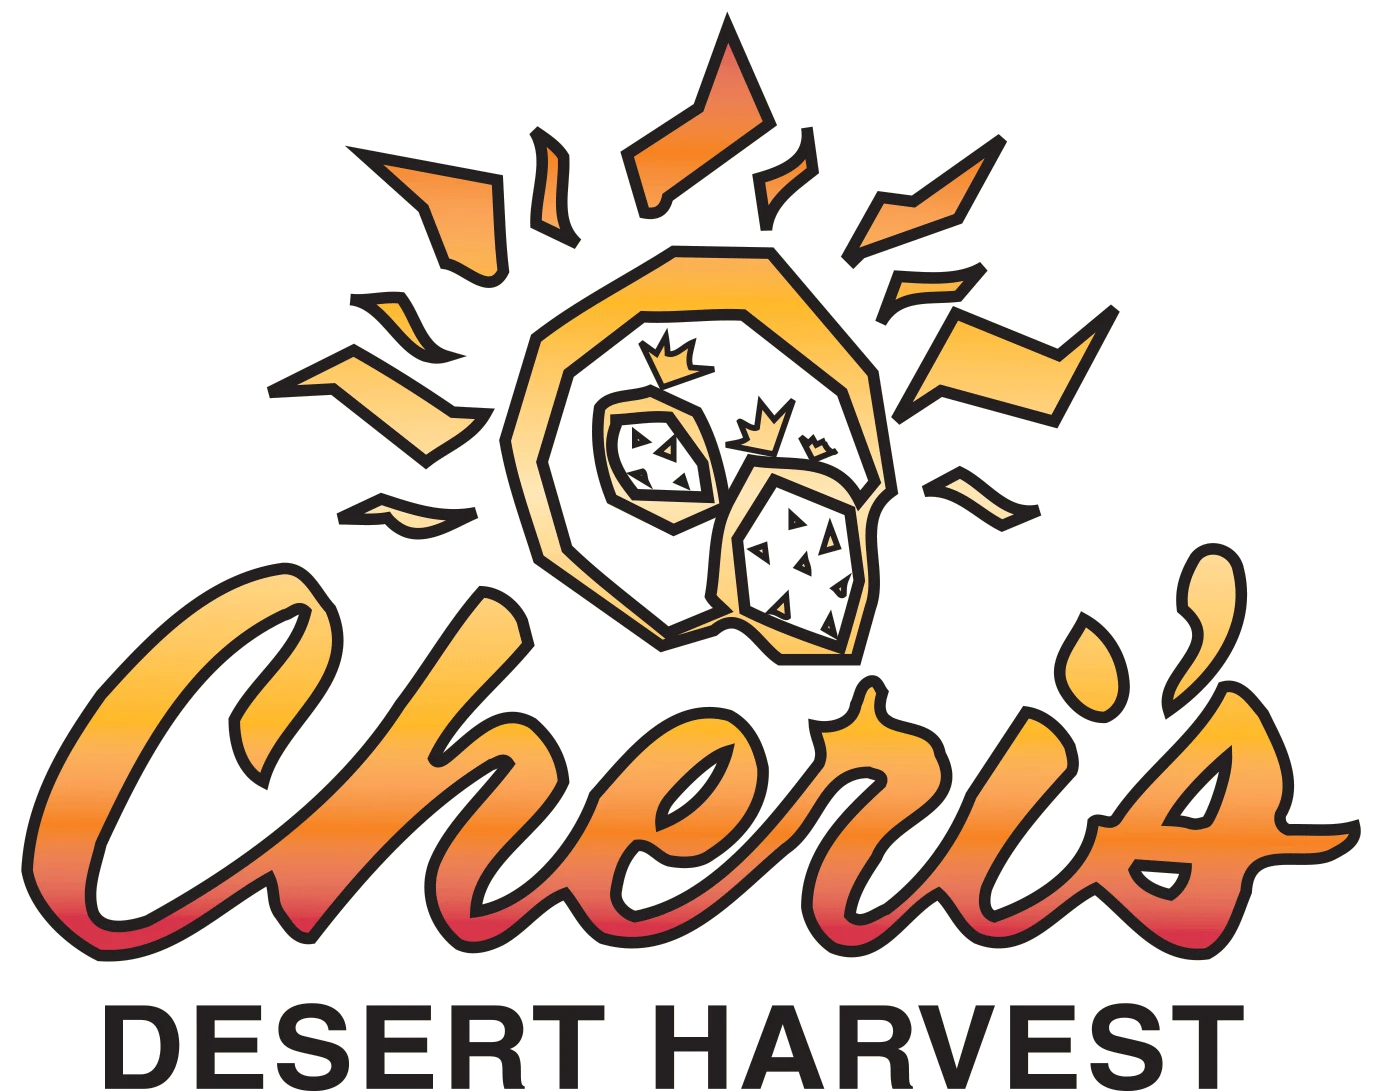 Cheri's Desert Harvest